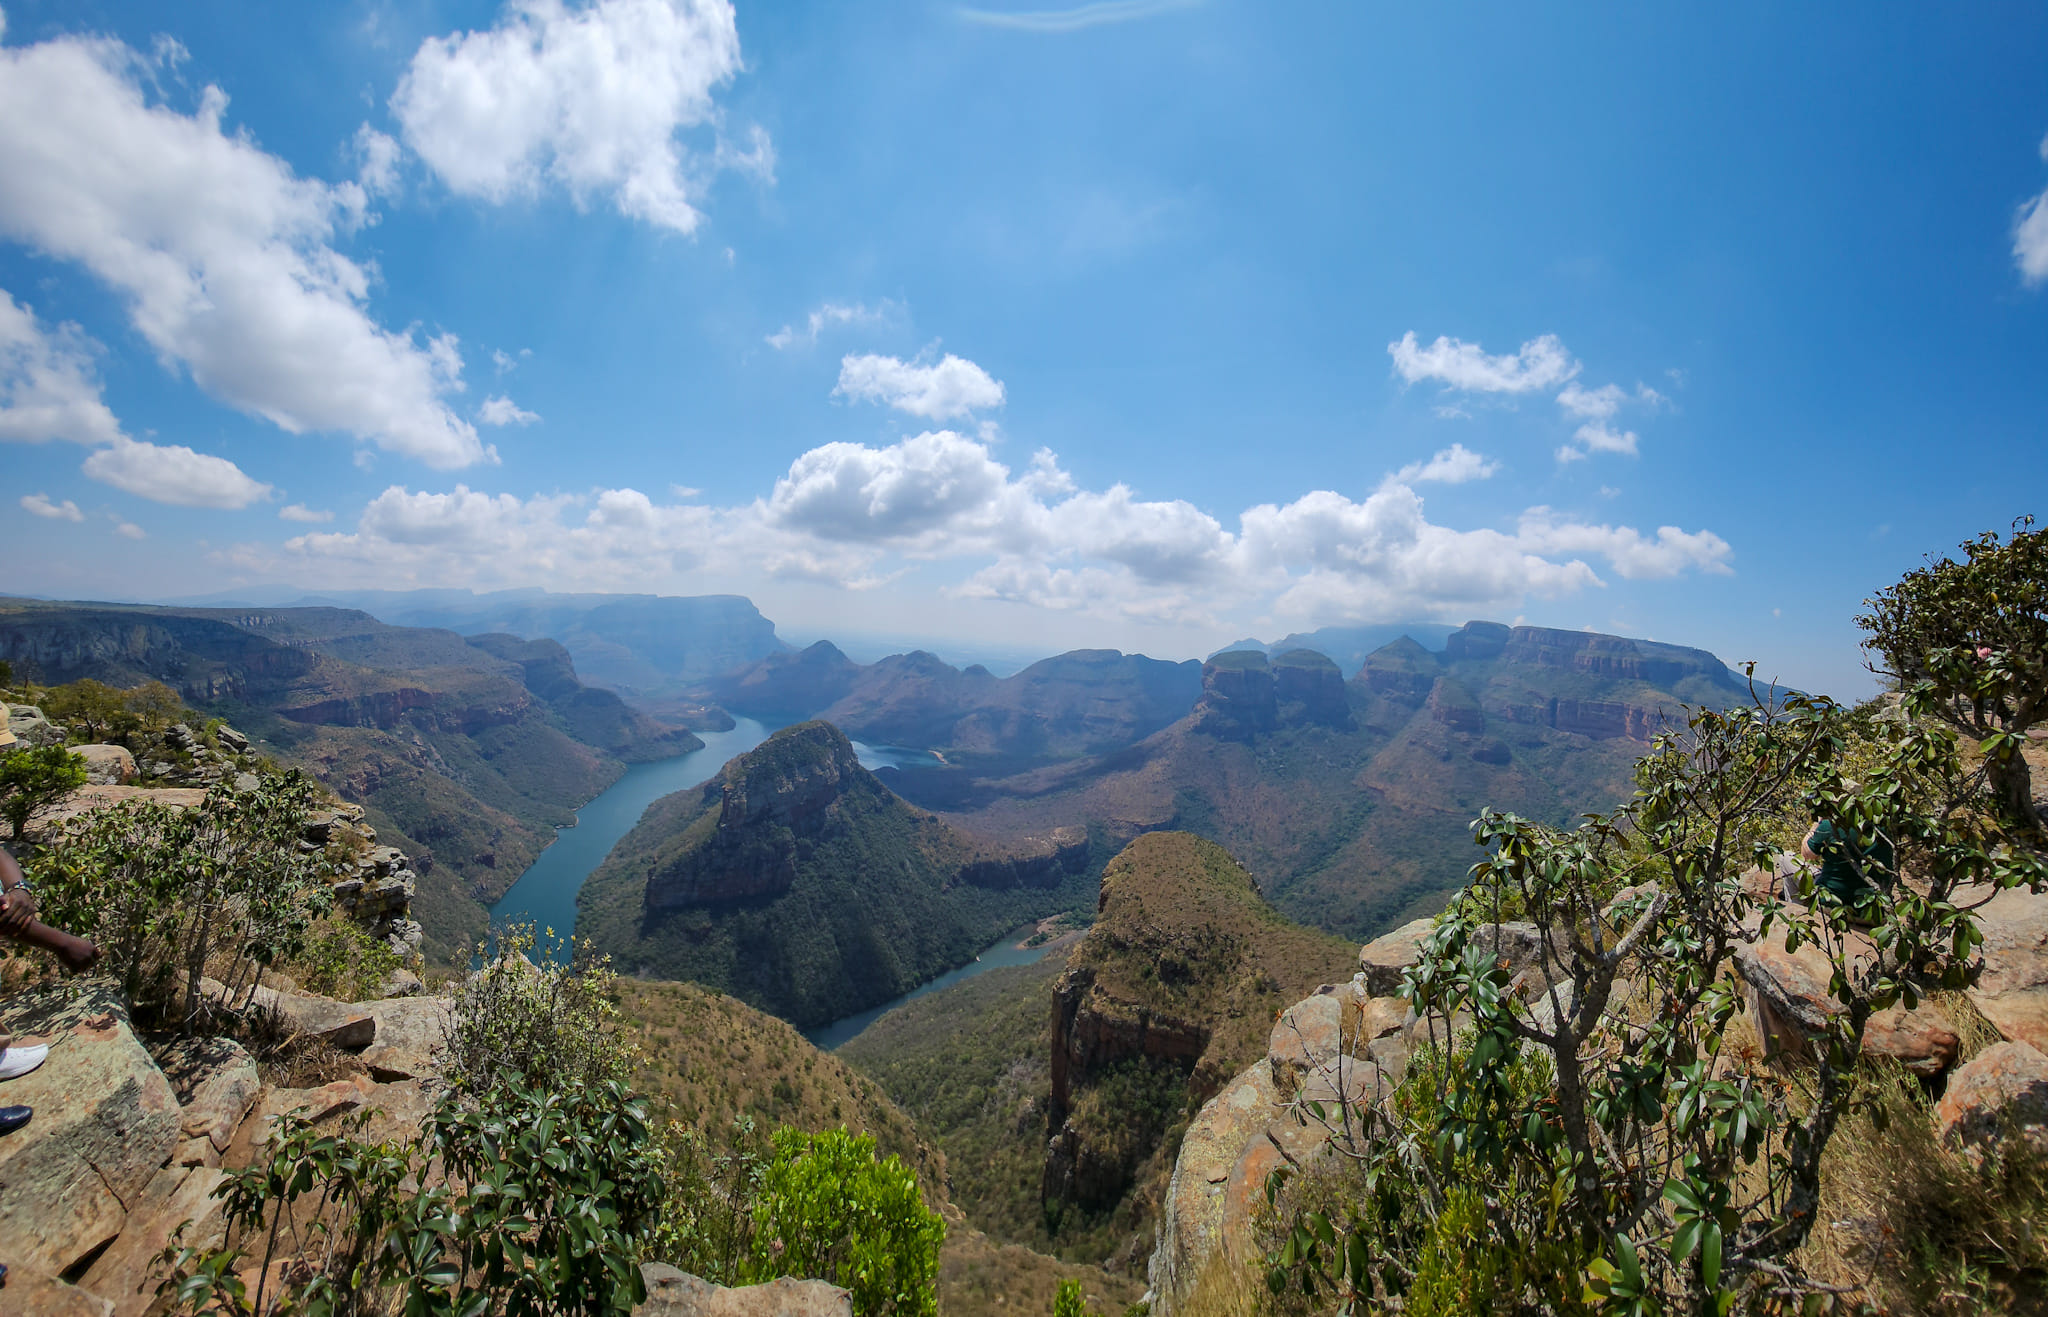 Heute fahren wir durch die wunderschöne Panorama-Route und fotografieren hauptsächlich Landschaften. Fotoreise durch Südafrika.